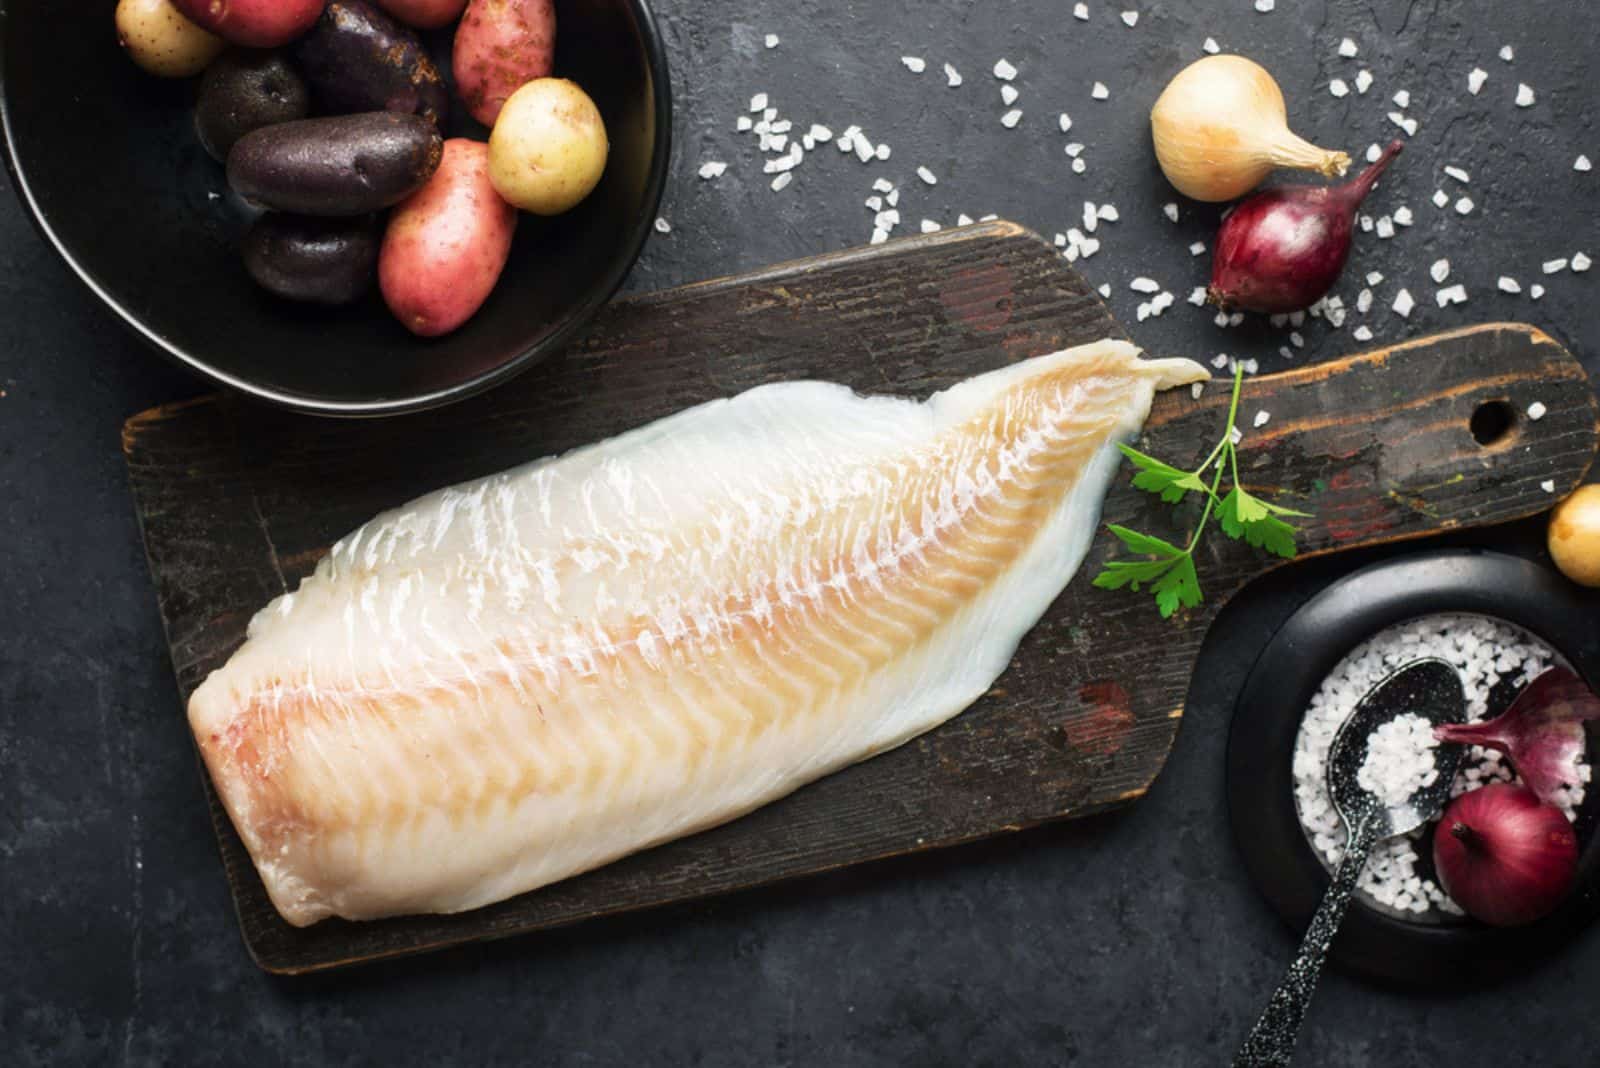 Bacalao pescado blanco patatas plato ingredientes para una comida casera sana y confortable